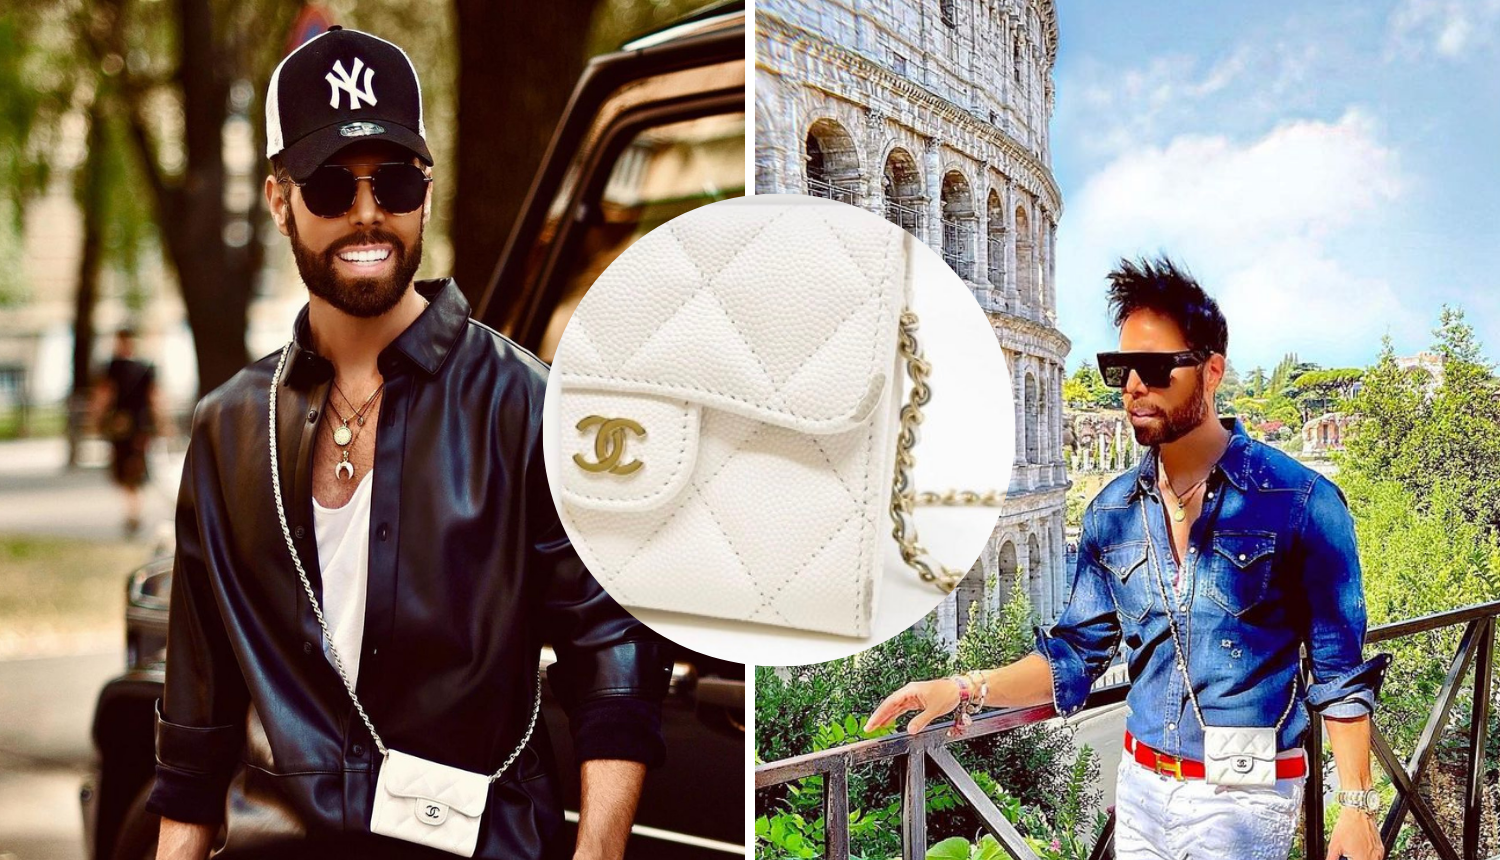 Grubnića razočarao Chanelov dućan u Rimu: 'Ogrebala mi se torbica, a oni nisu htjeli pomoći'